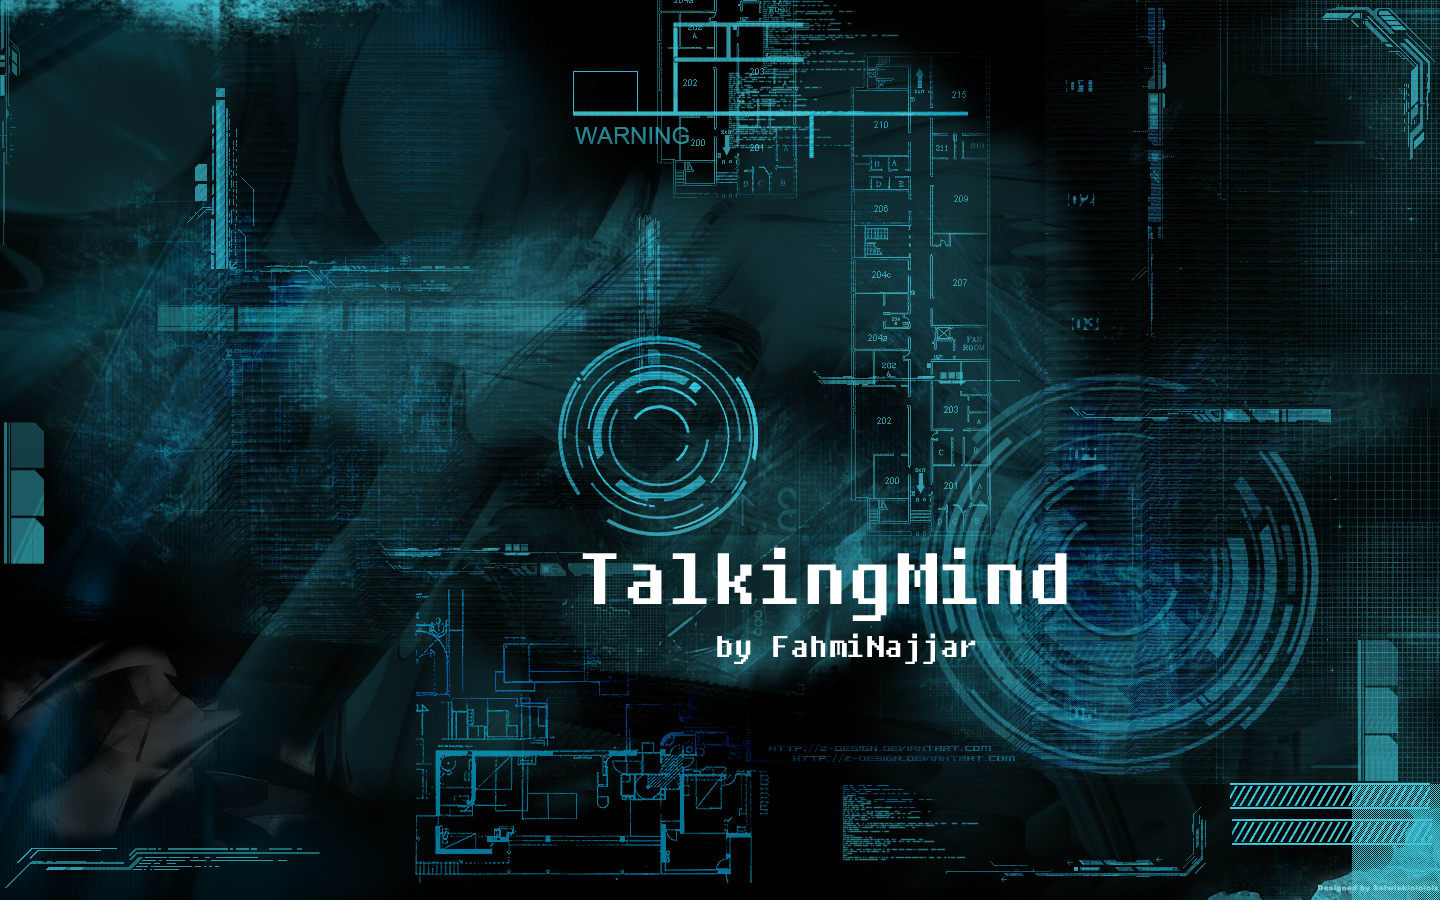 TalkingMind